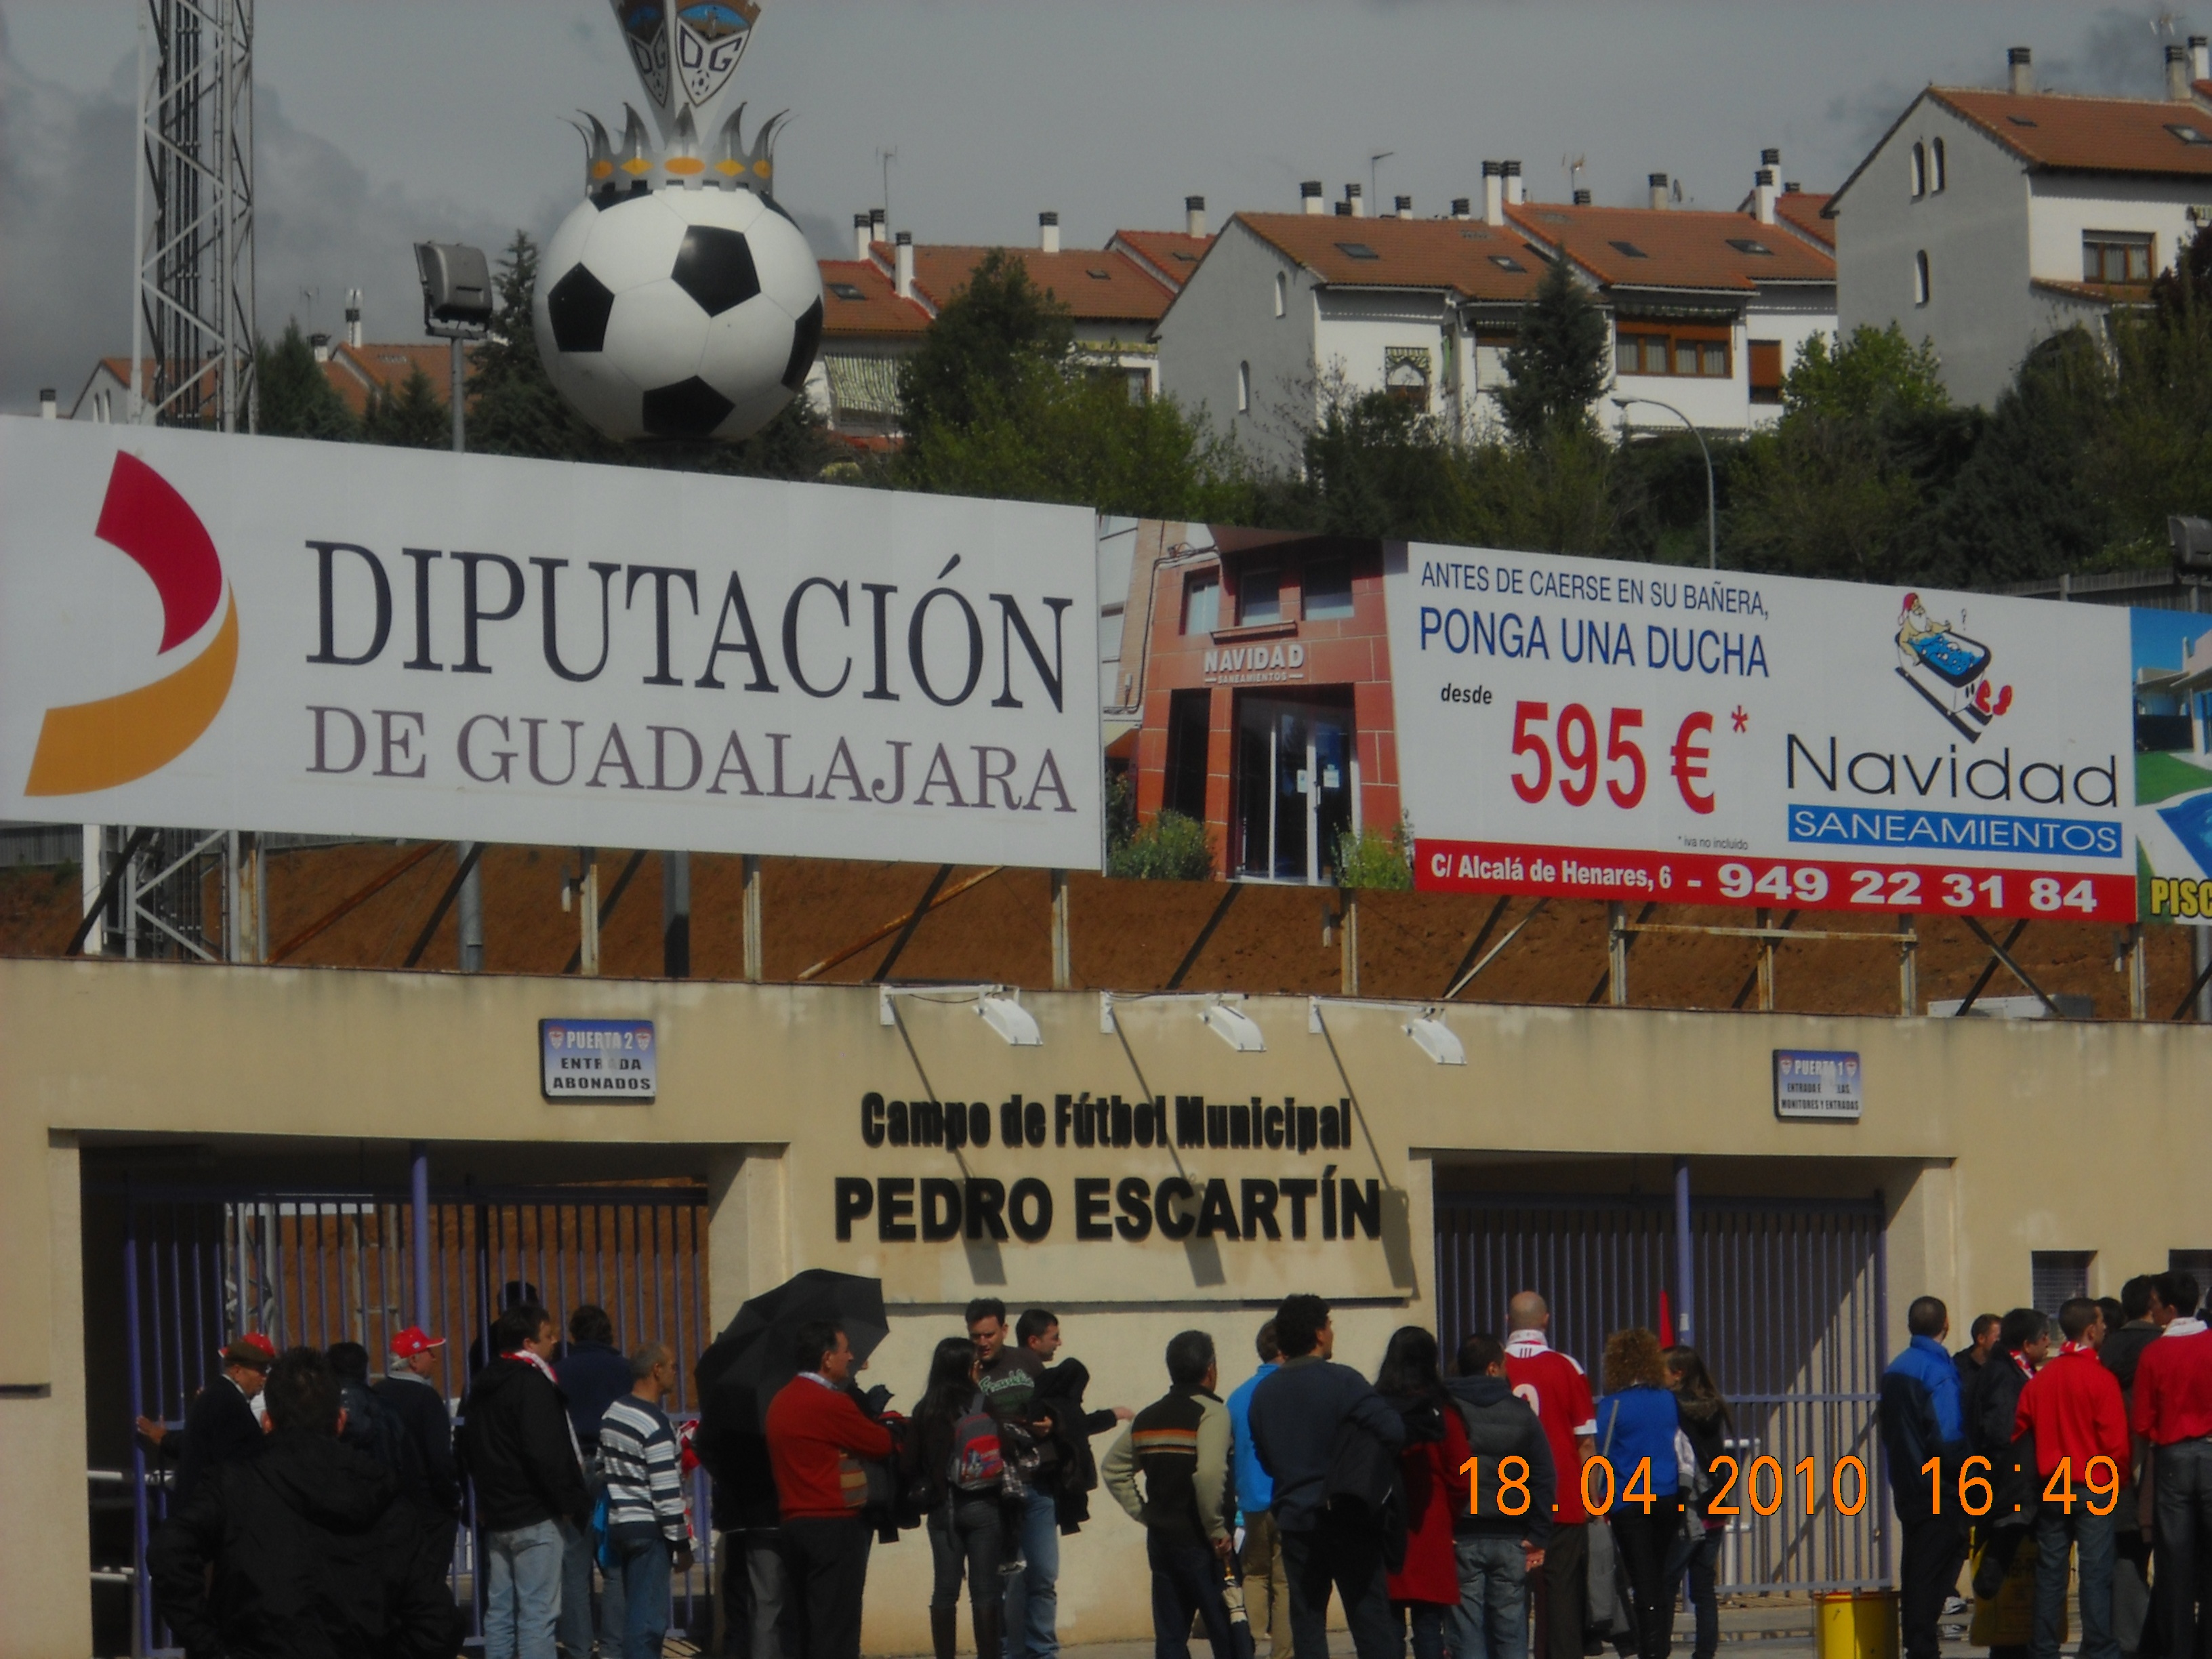 Estadio Pedro Escartin (Guadalajara)